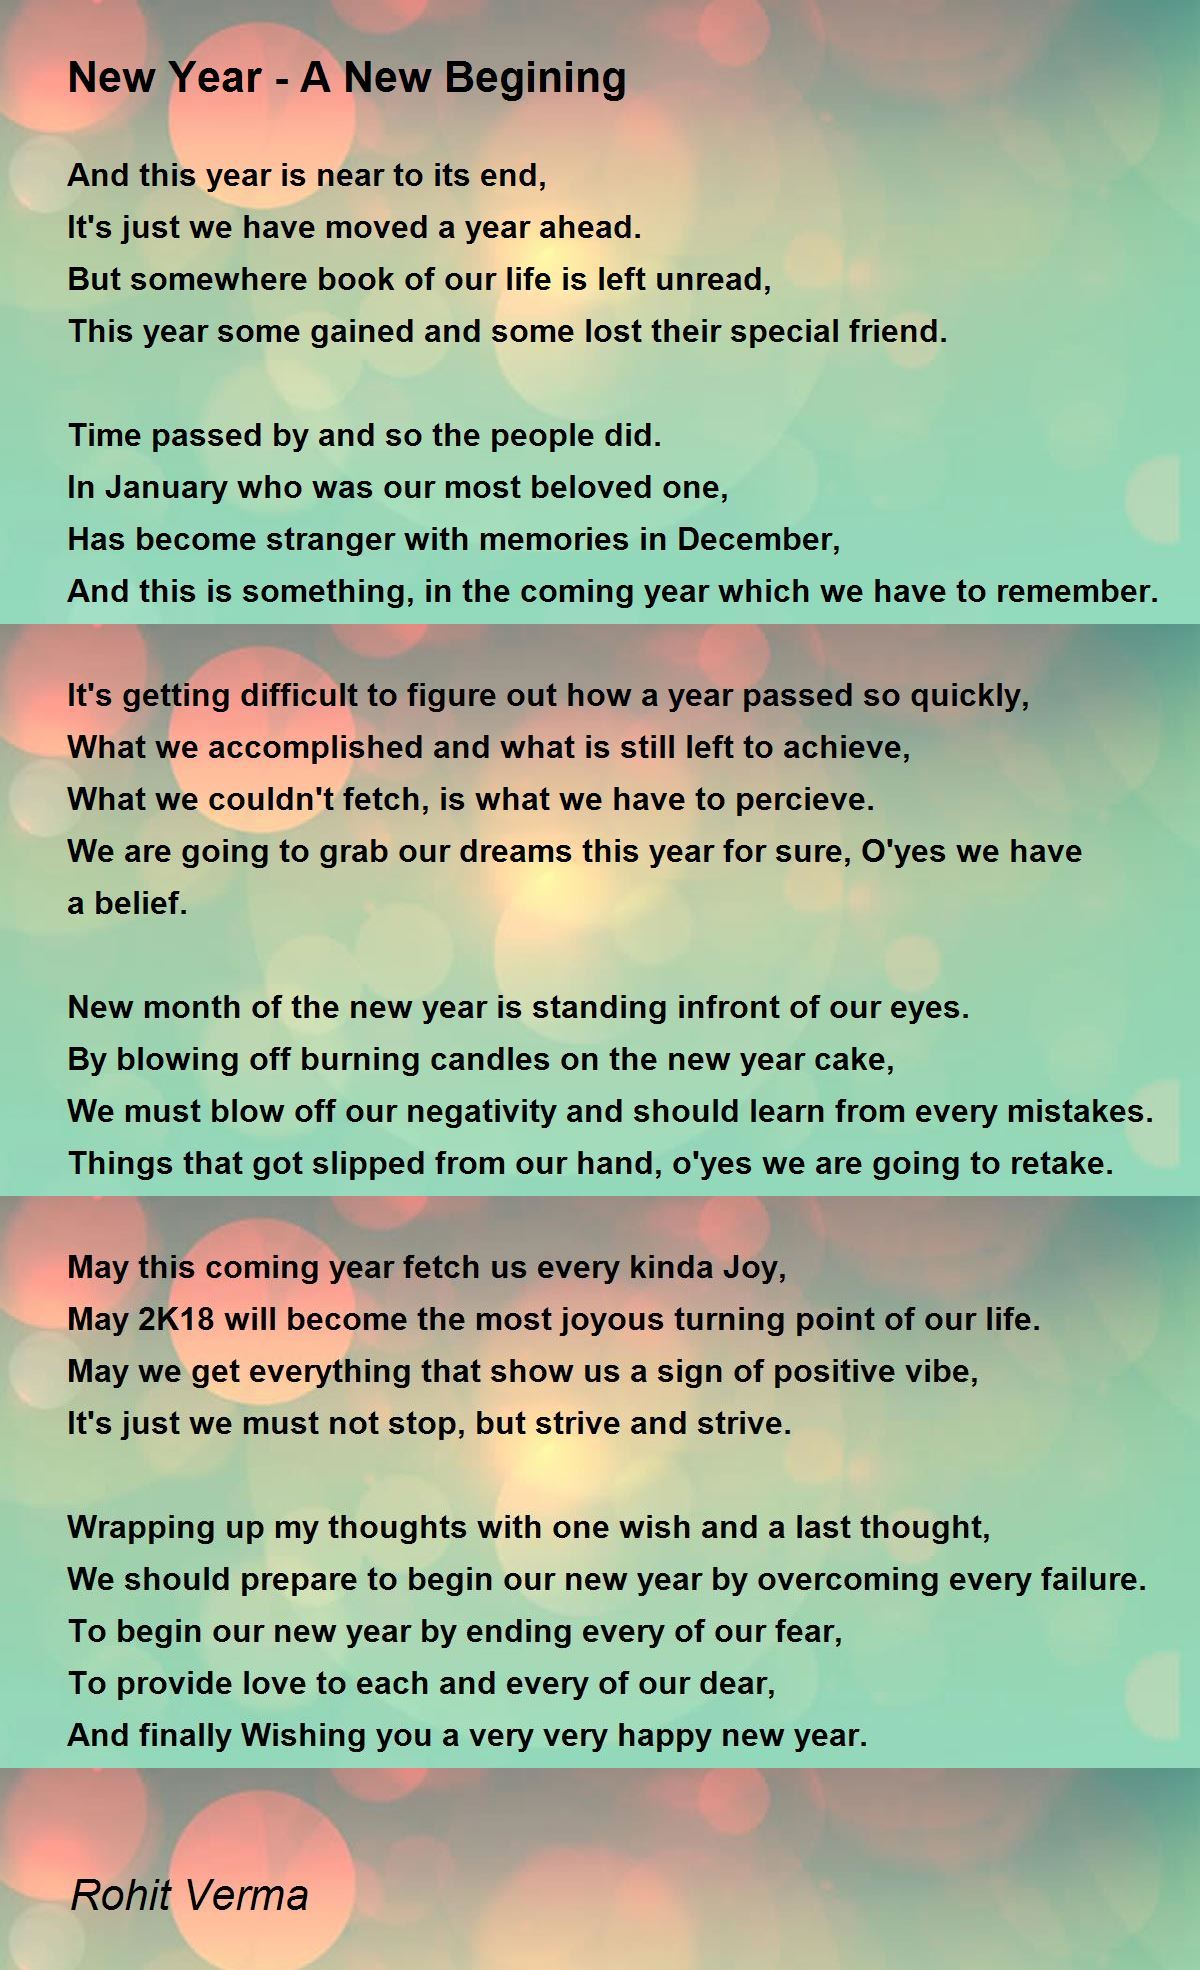 New Year - A New Begining - New Year - A New Begining Poem by Rohit Verma